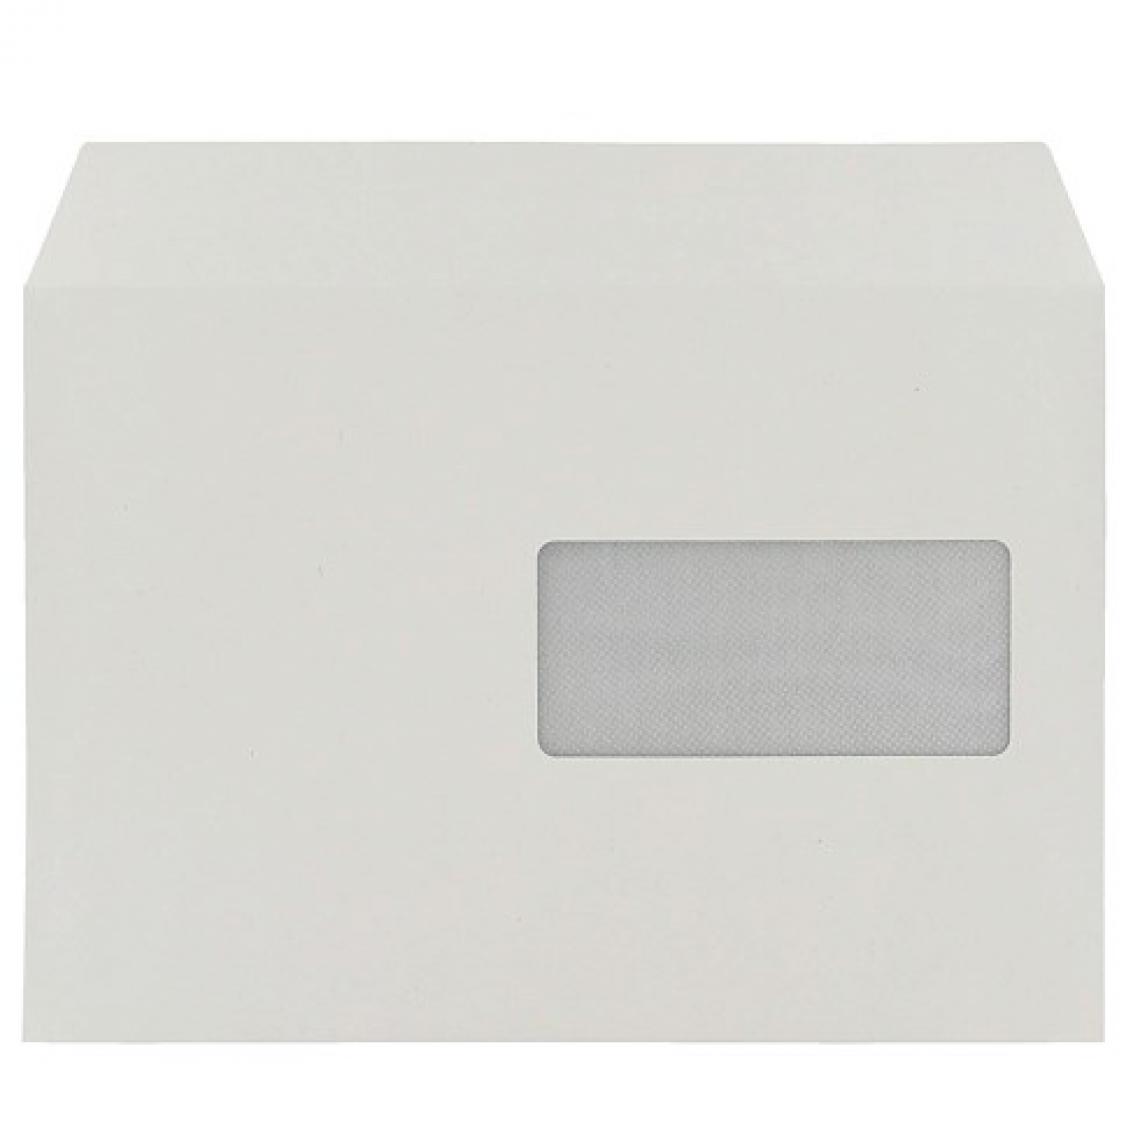 Clairefontaine - Enveloppe recyclée Forever Clairefontaine blanche C5 avec fenêtre - Boîte de 500 - Accessoires Bureau